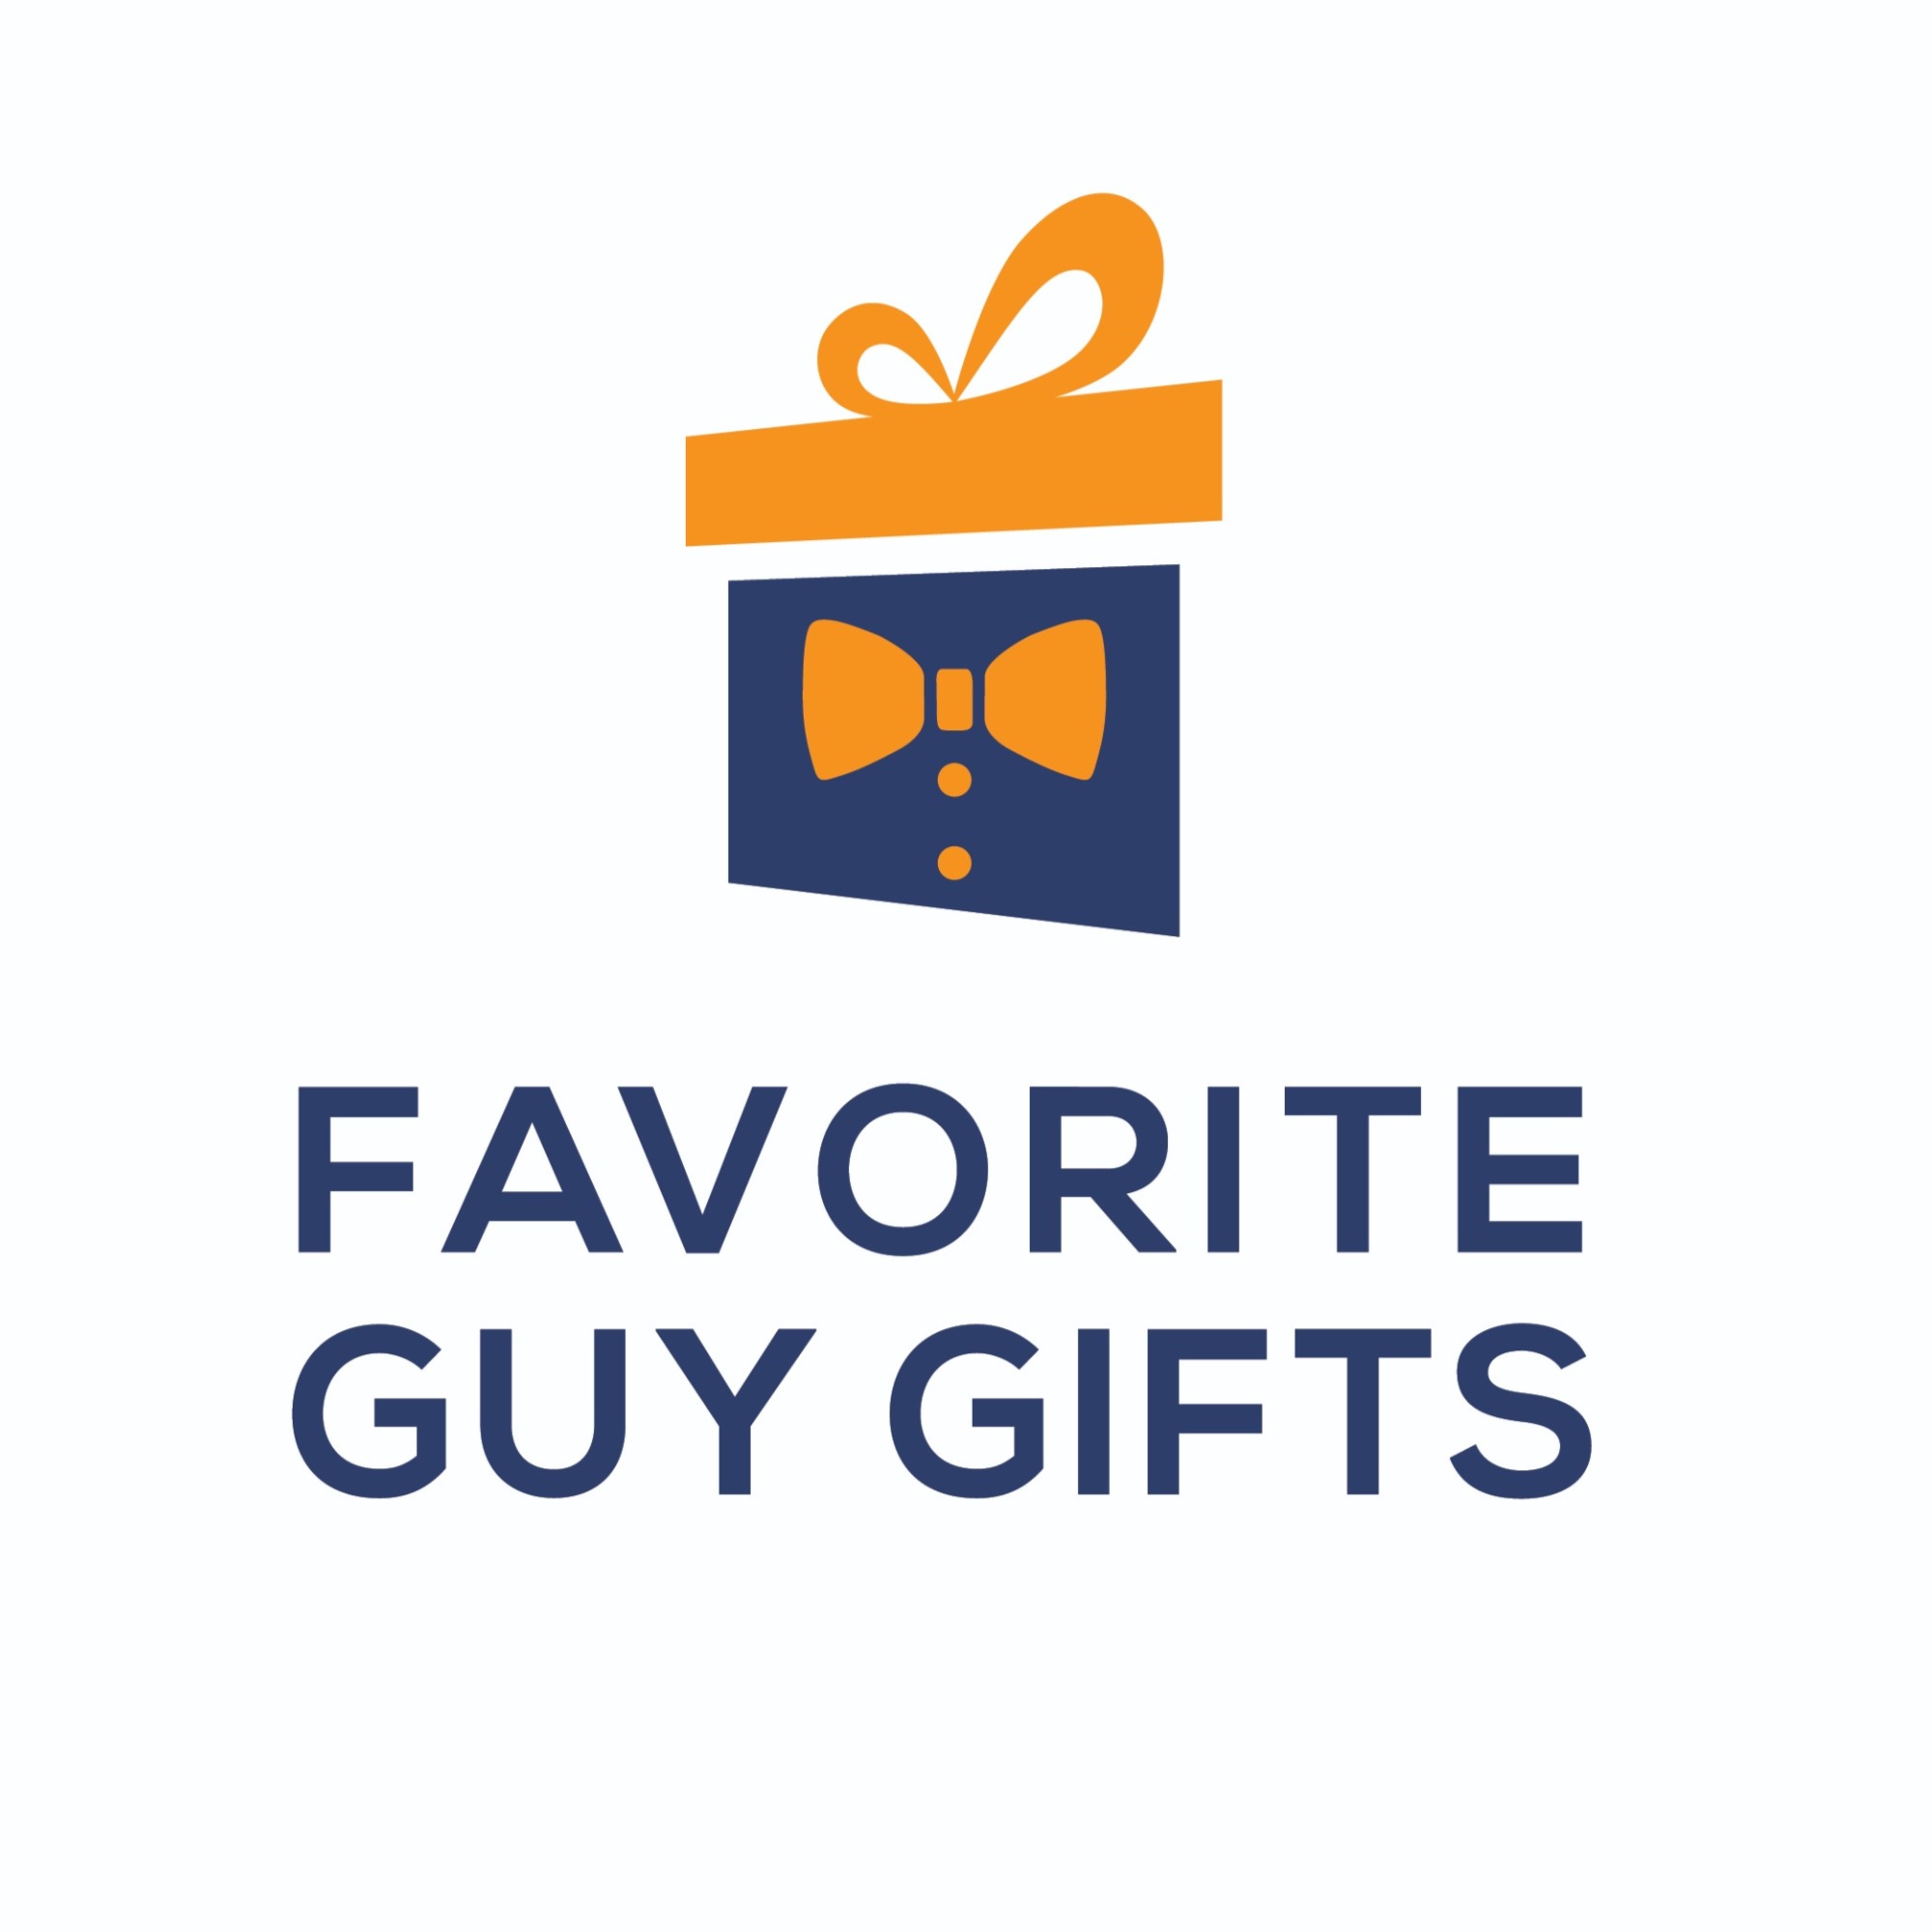 https://favoriteguygifts.com/wp-content/uploads/2021/01/Favorite-Guy-Gifts-Full-Color-Vertical-Logo-White-Background-Find-Gifts-For-Men.jpg